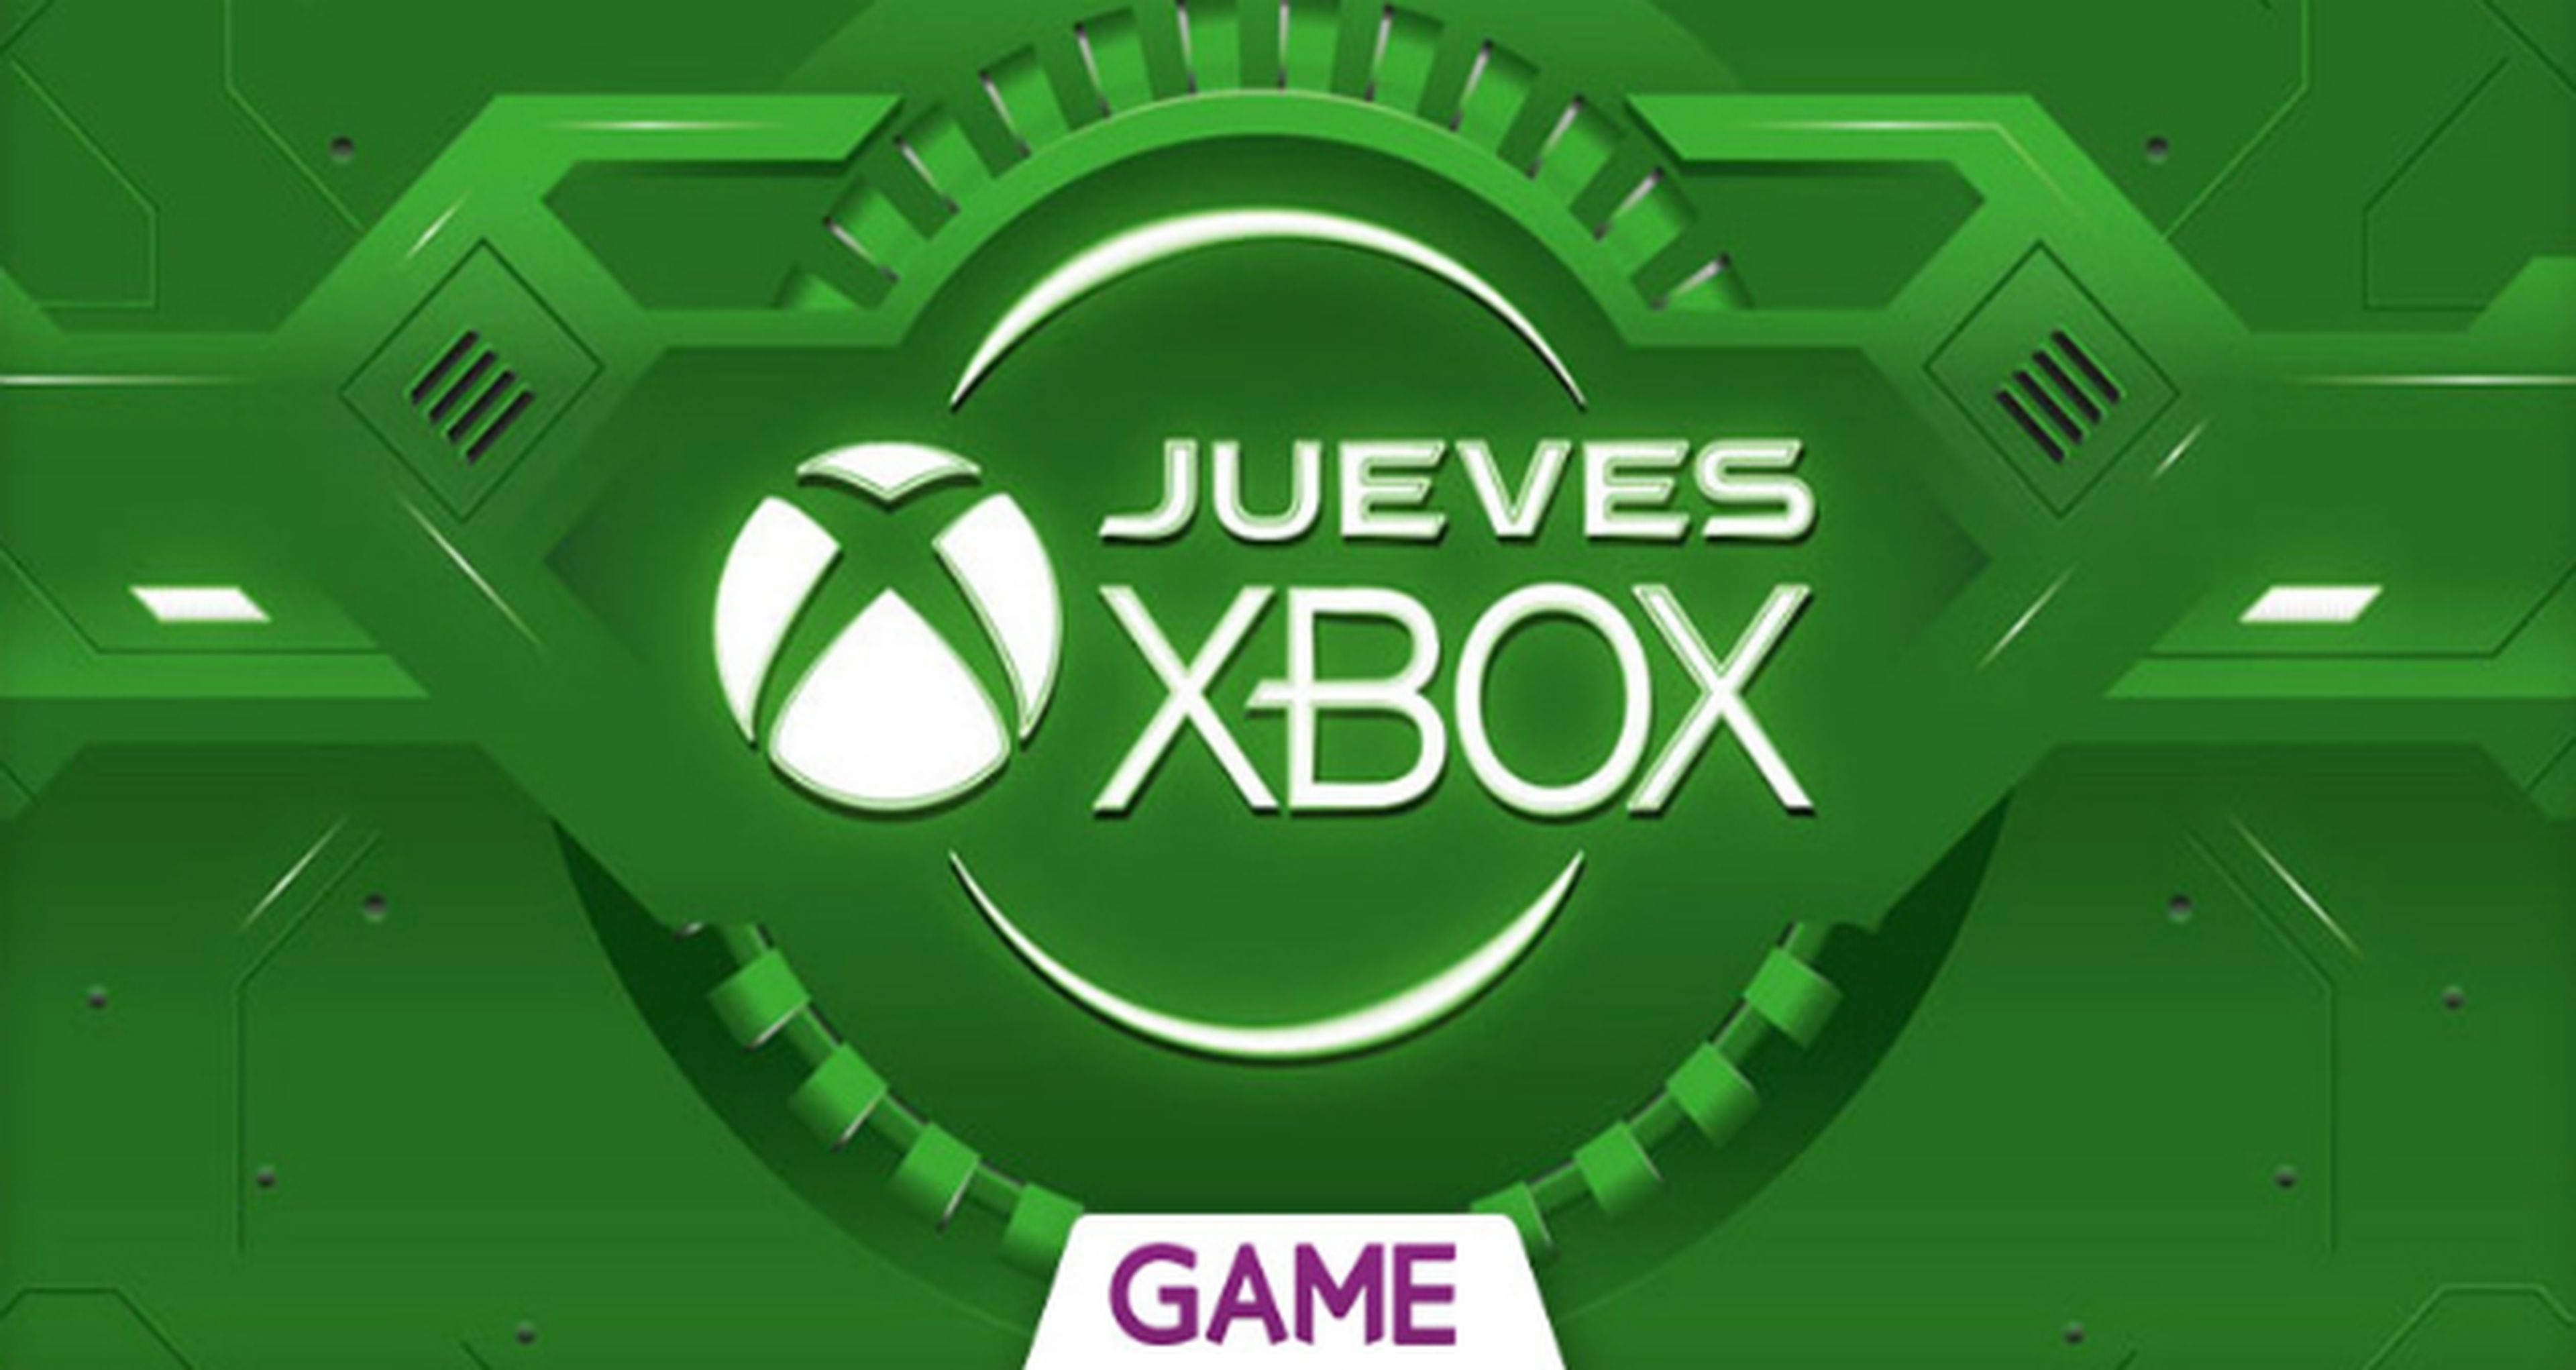 Jueves Xbox en GAME - Ofertas del 21/01/2016